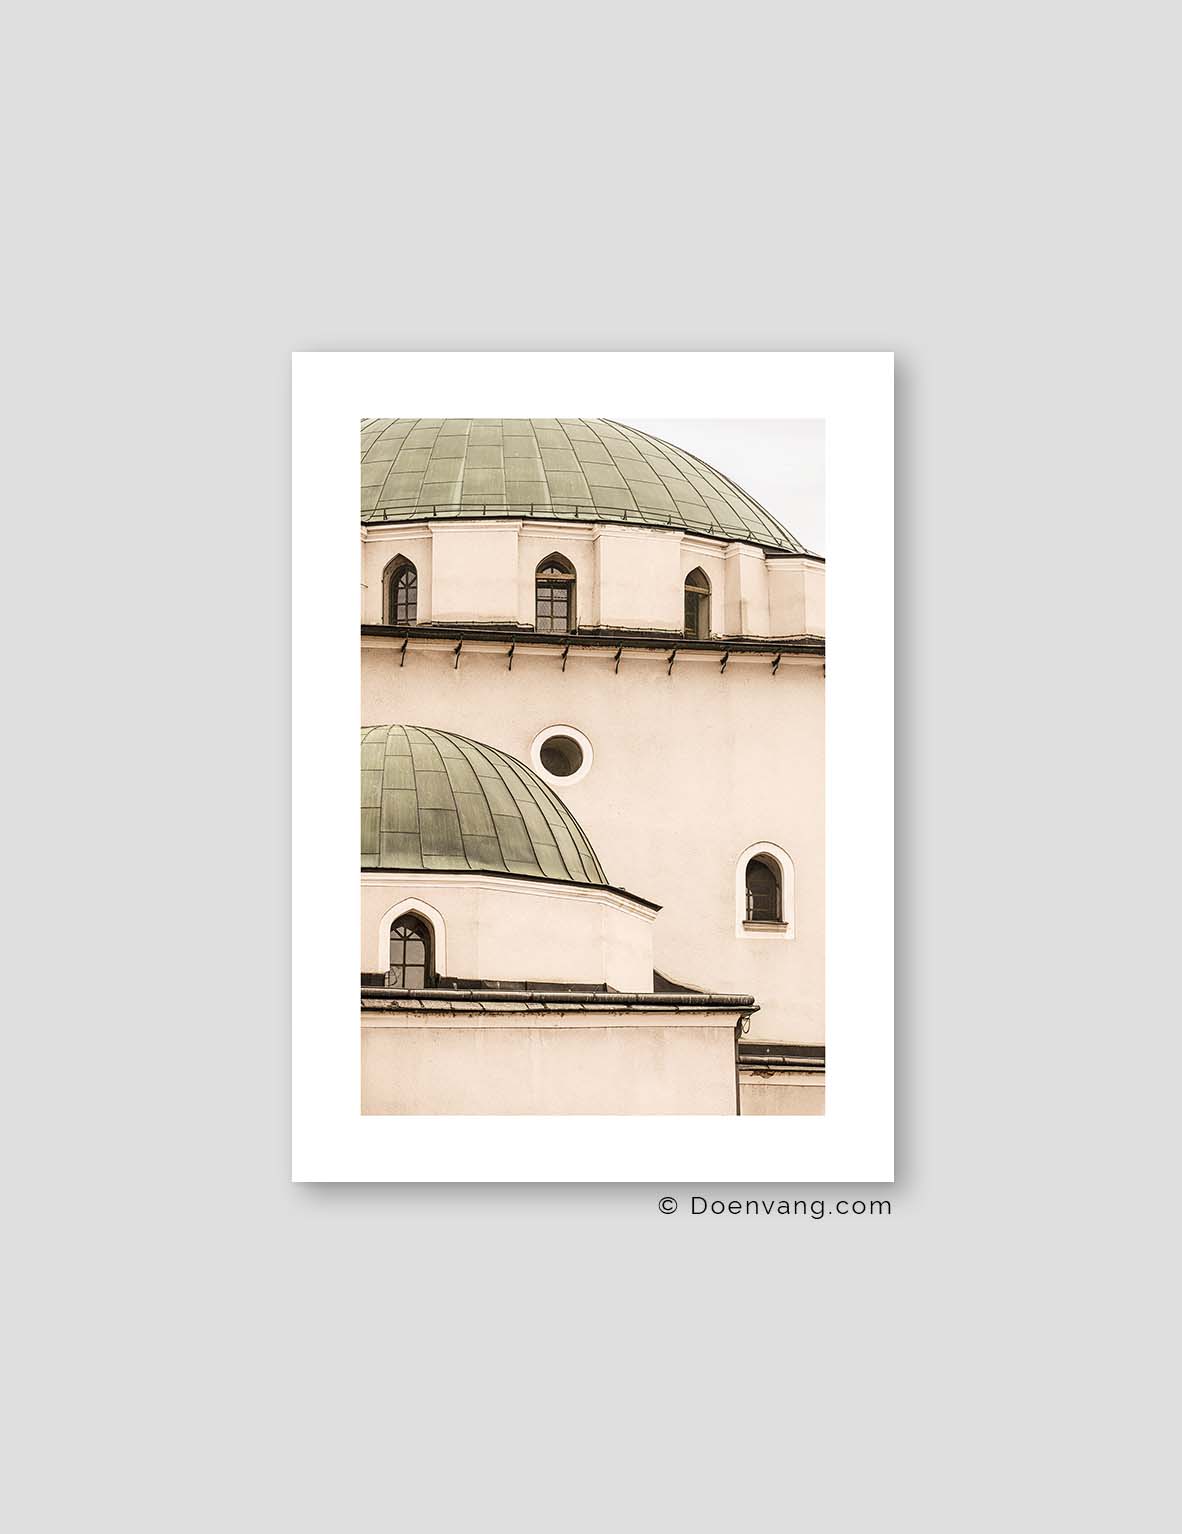 Sarajevo Gazi Husrev-beg Mosque Dome, Bosnia 2021